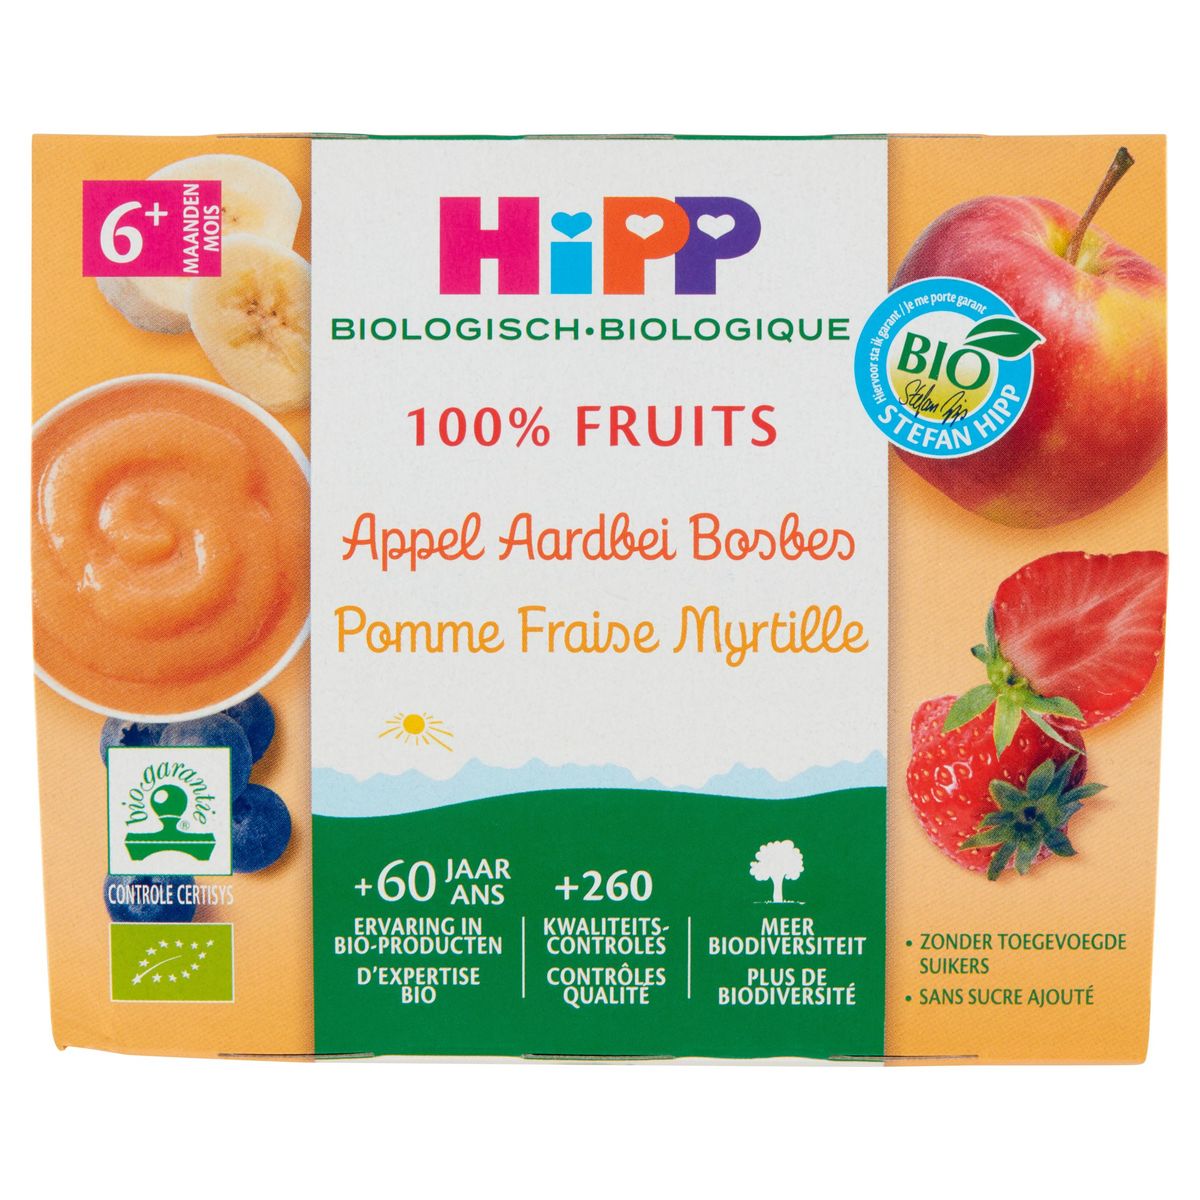 HiPP Biologisch 100% Fruits Appel Aardbei Bosbes 6+ Maanden 4 x 100 g